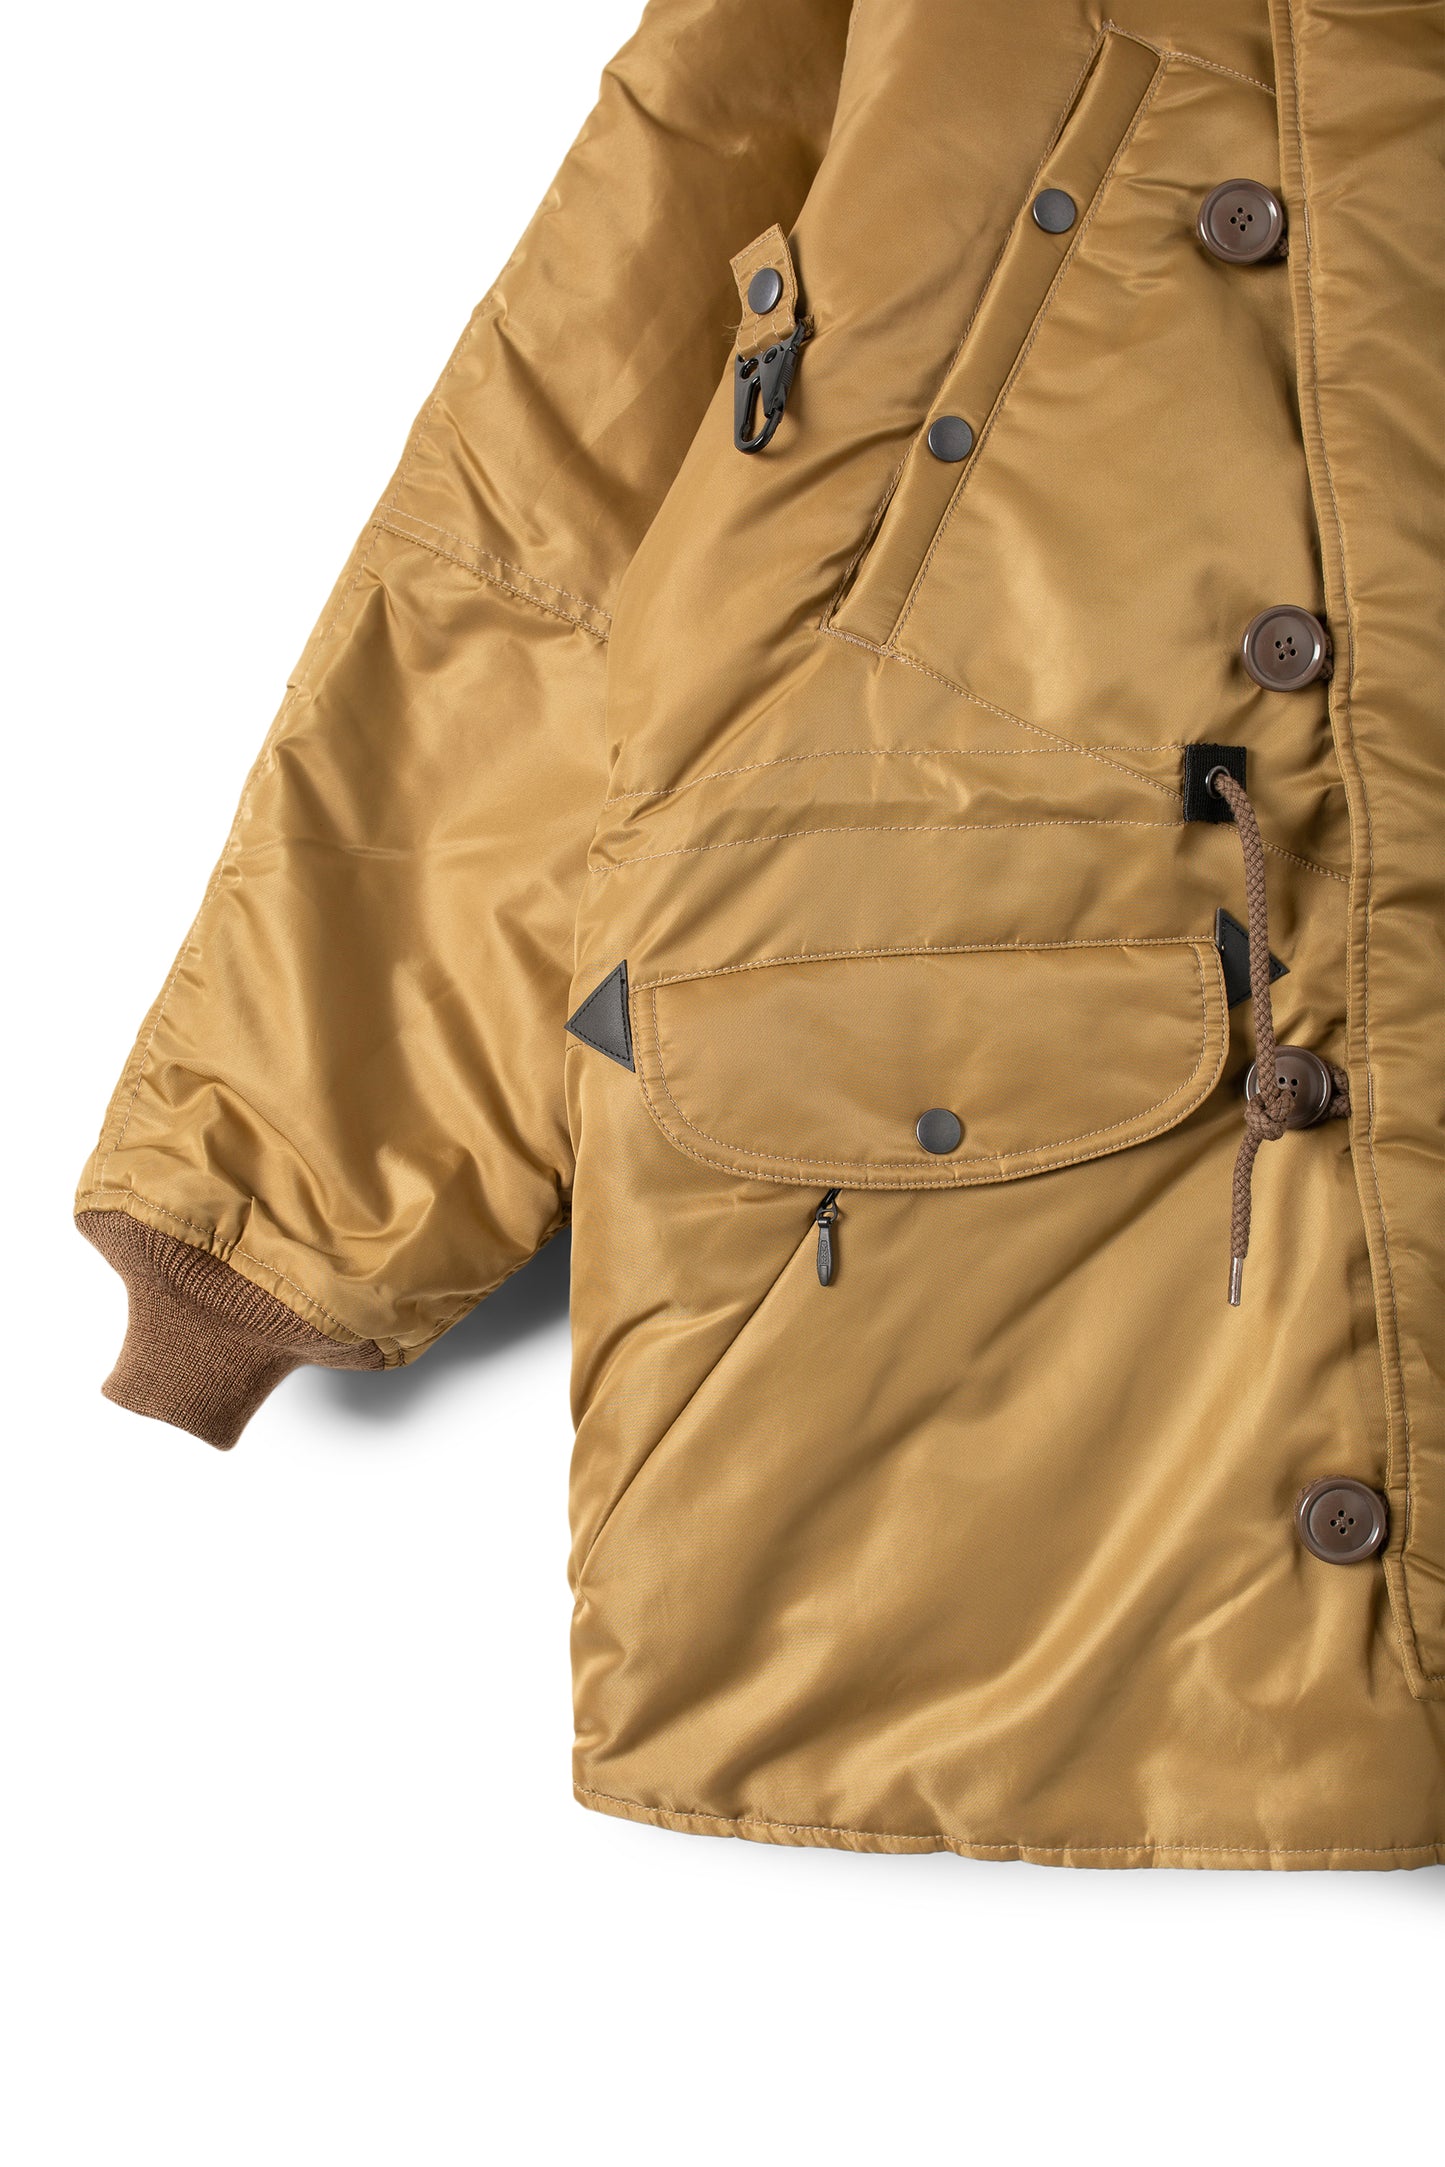 Extra Mile N-3 Field Coat (Tan)